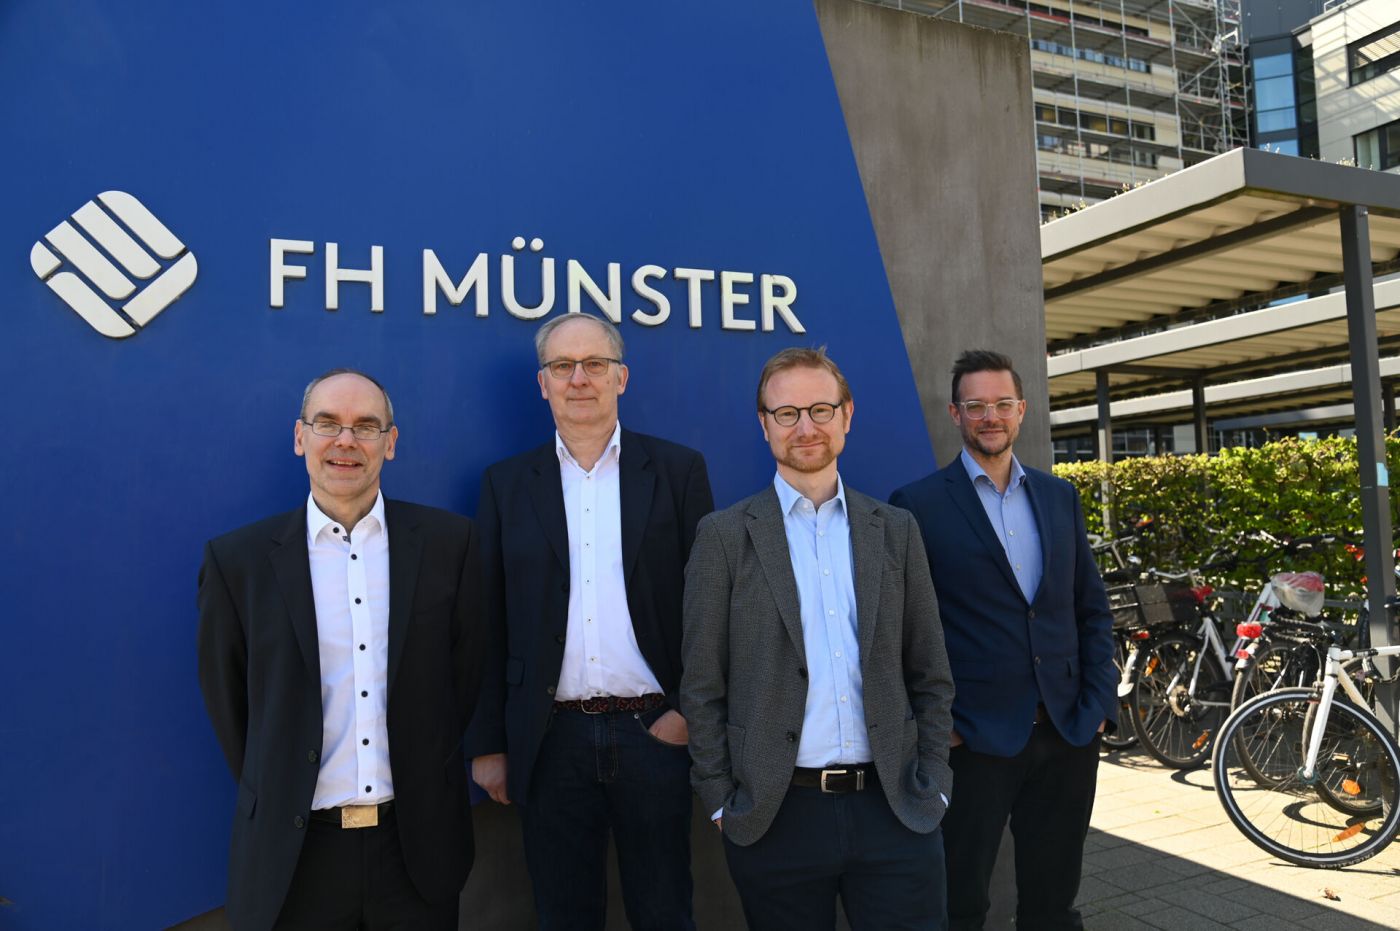 Vier Männer, der Deakan des Fachbereichs Wirtschaft der FH Münster sowie drei Studiengangsleiter des Fachbereichs, stehen vor dem FH-Münster-Schild am Fachhochschulzentrum.